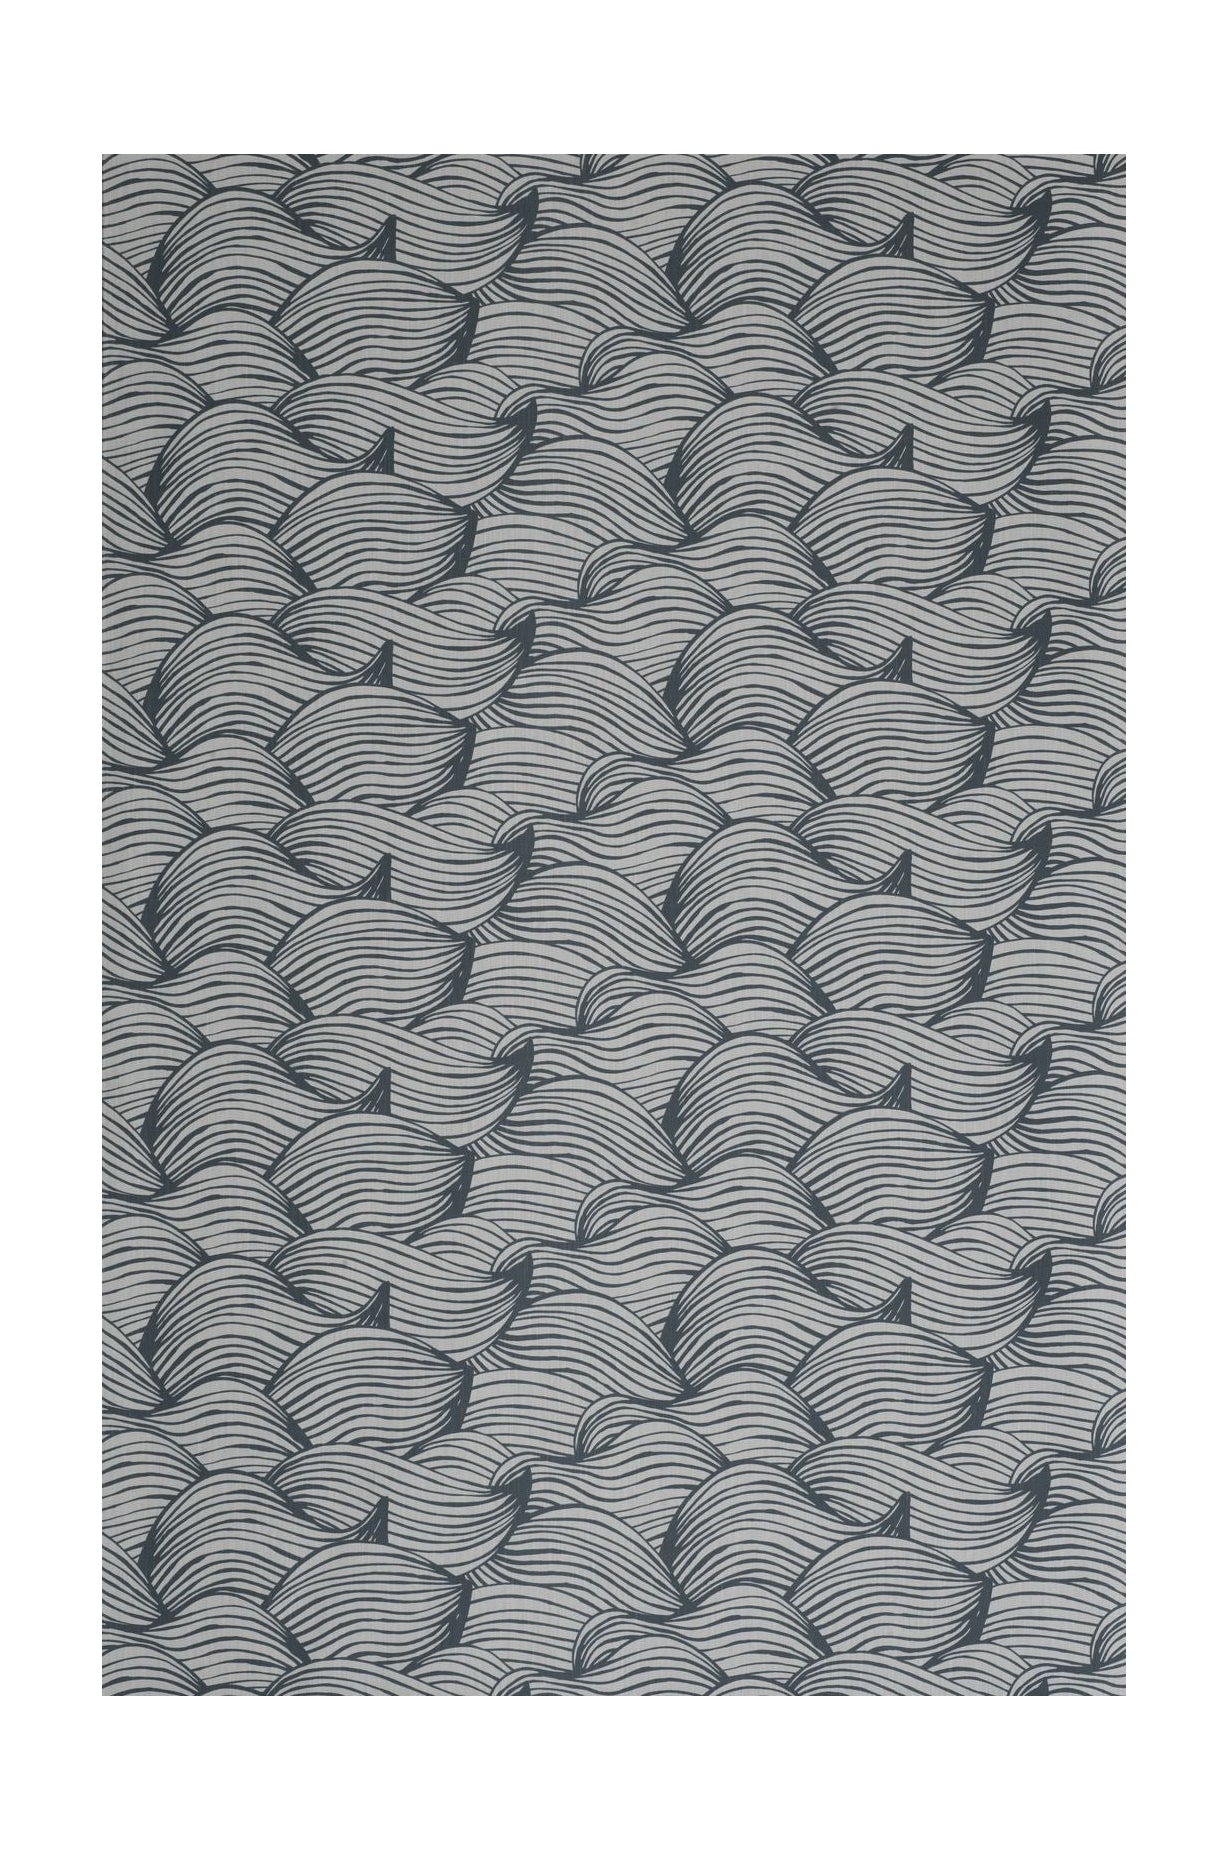 Spira Wave Fabric Ancho de 150 cm (precio por metro), azul